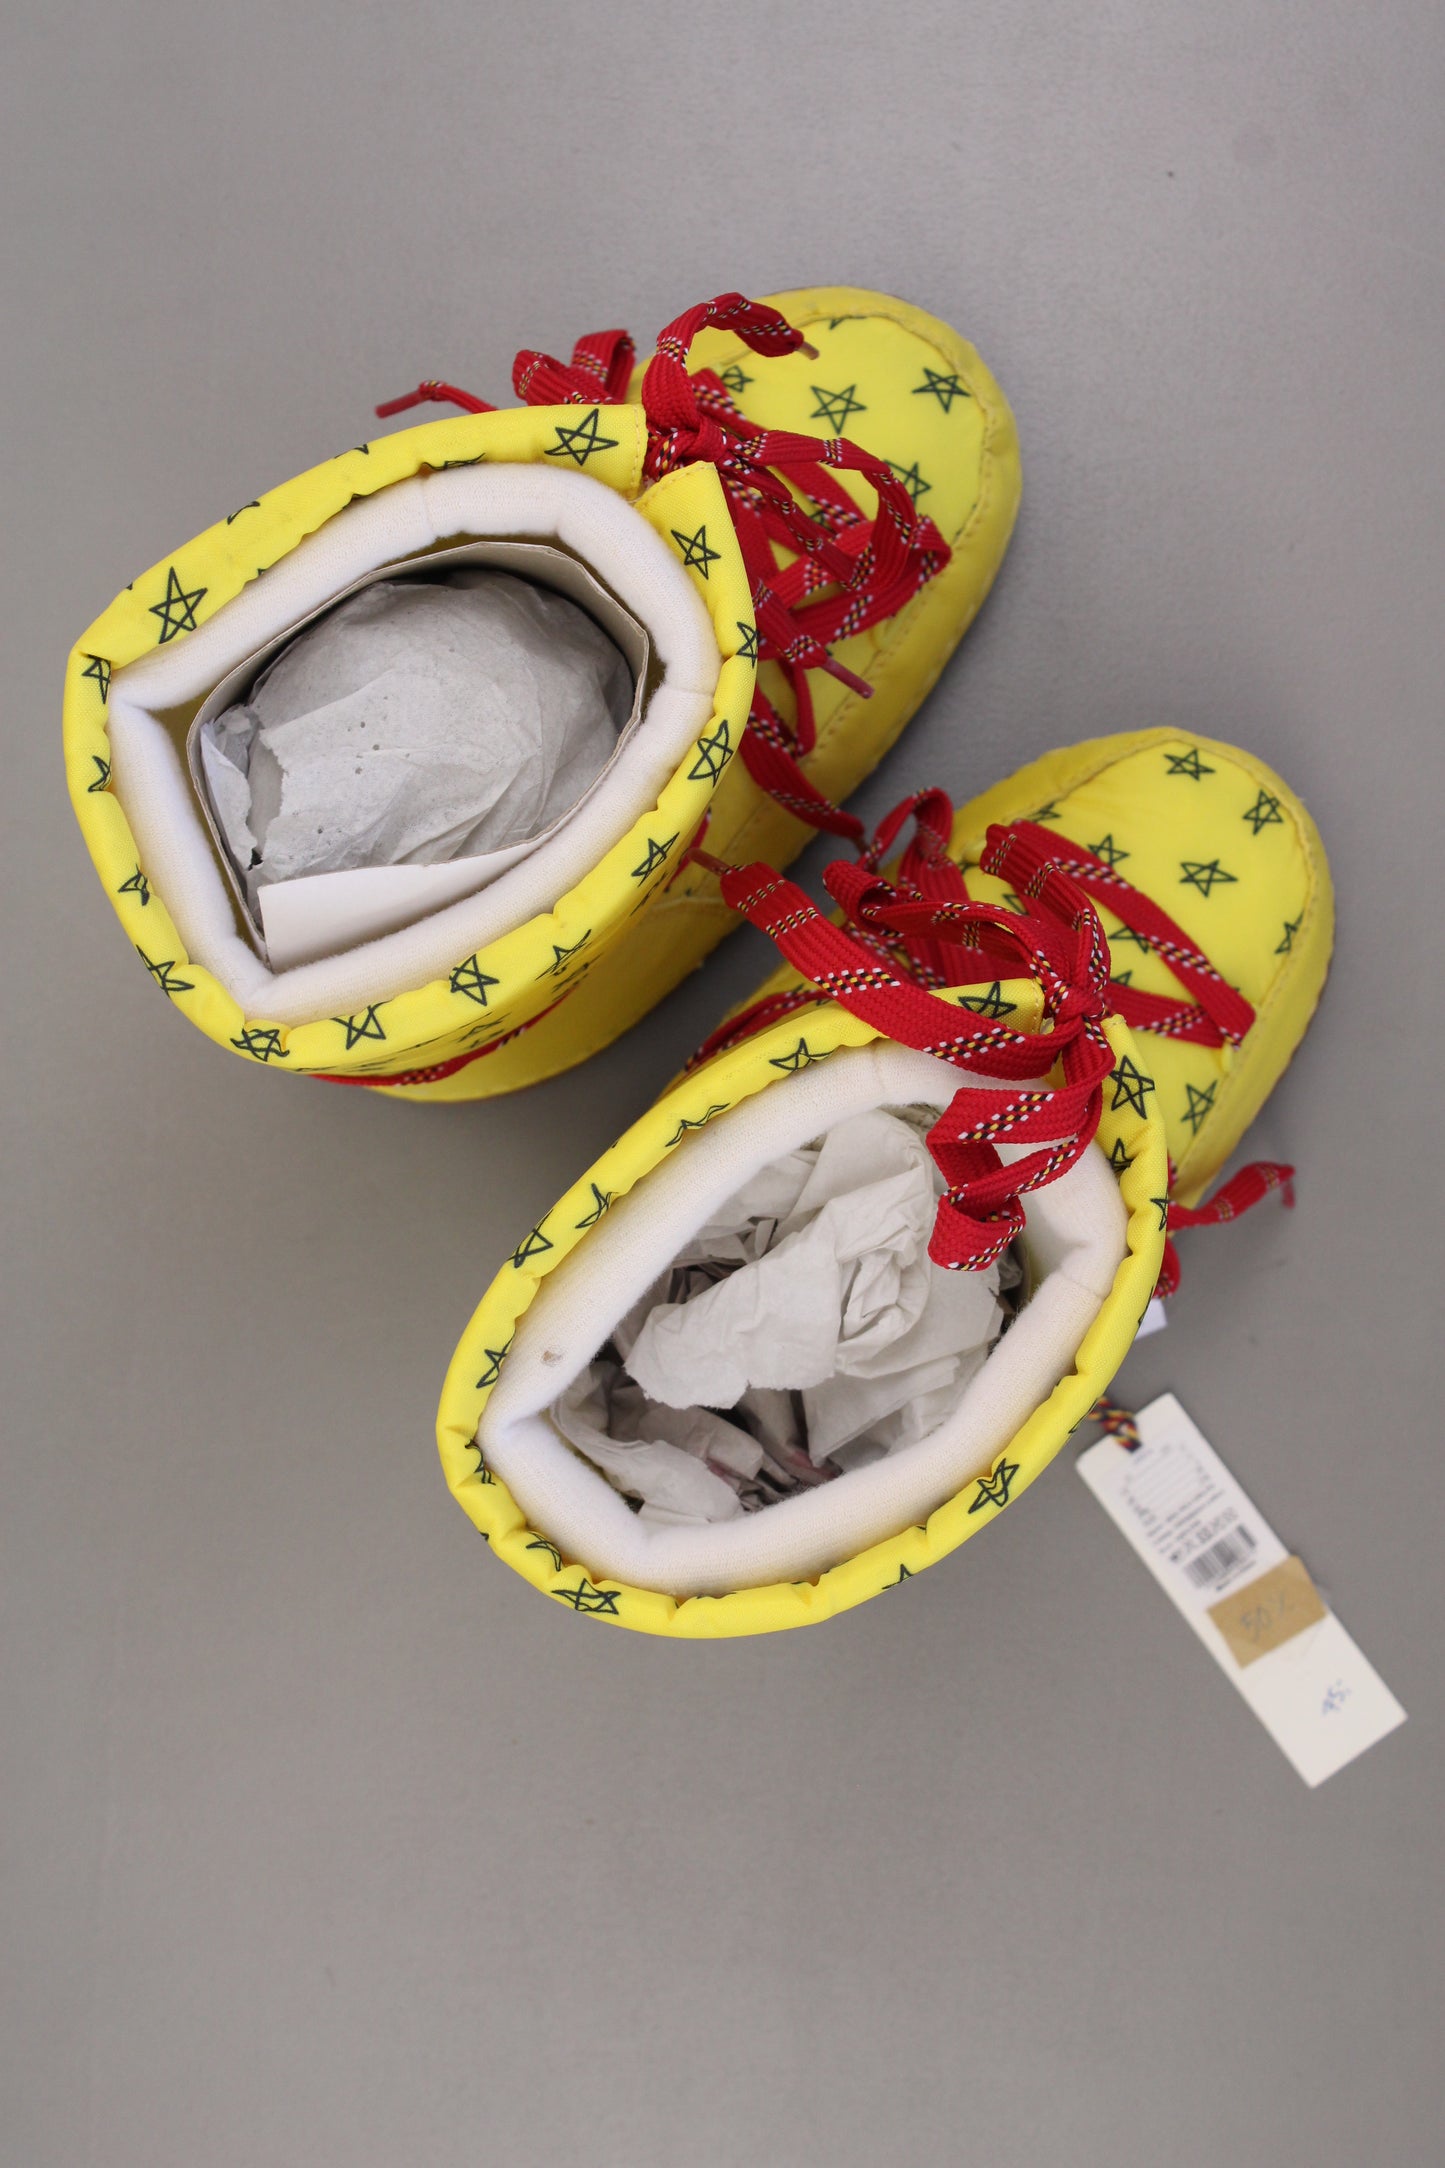 Bobo Choses Kinder Schneestiefel Stiefel gelb Größe 32 neu mit Etikett